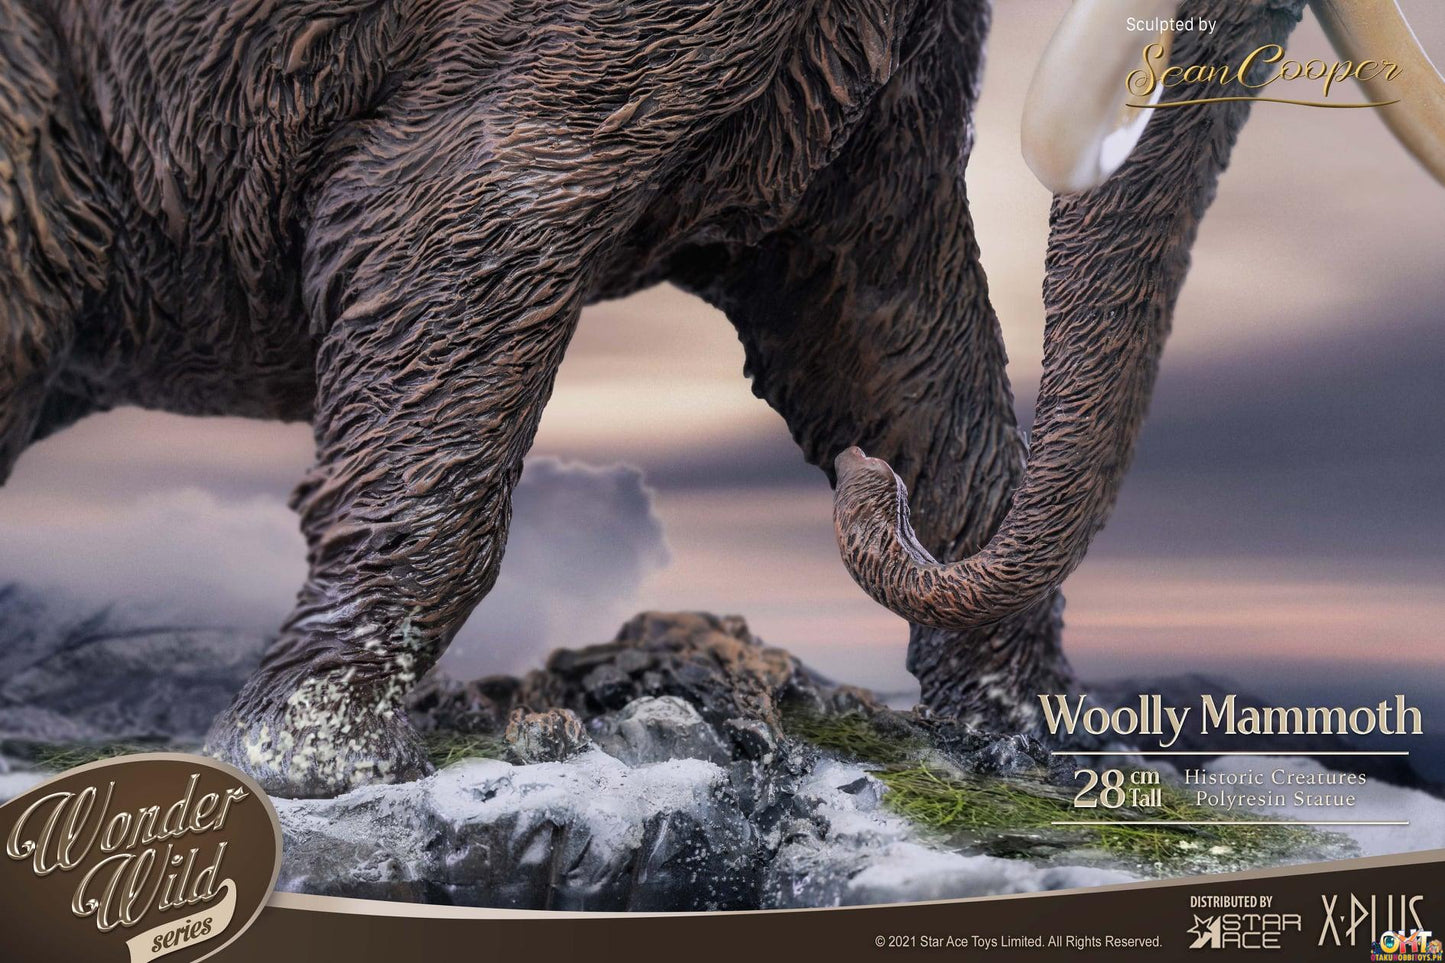 Star Ace Wonder Wild Woolly Mammoth